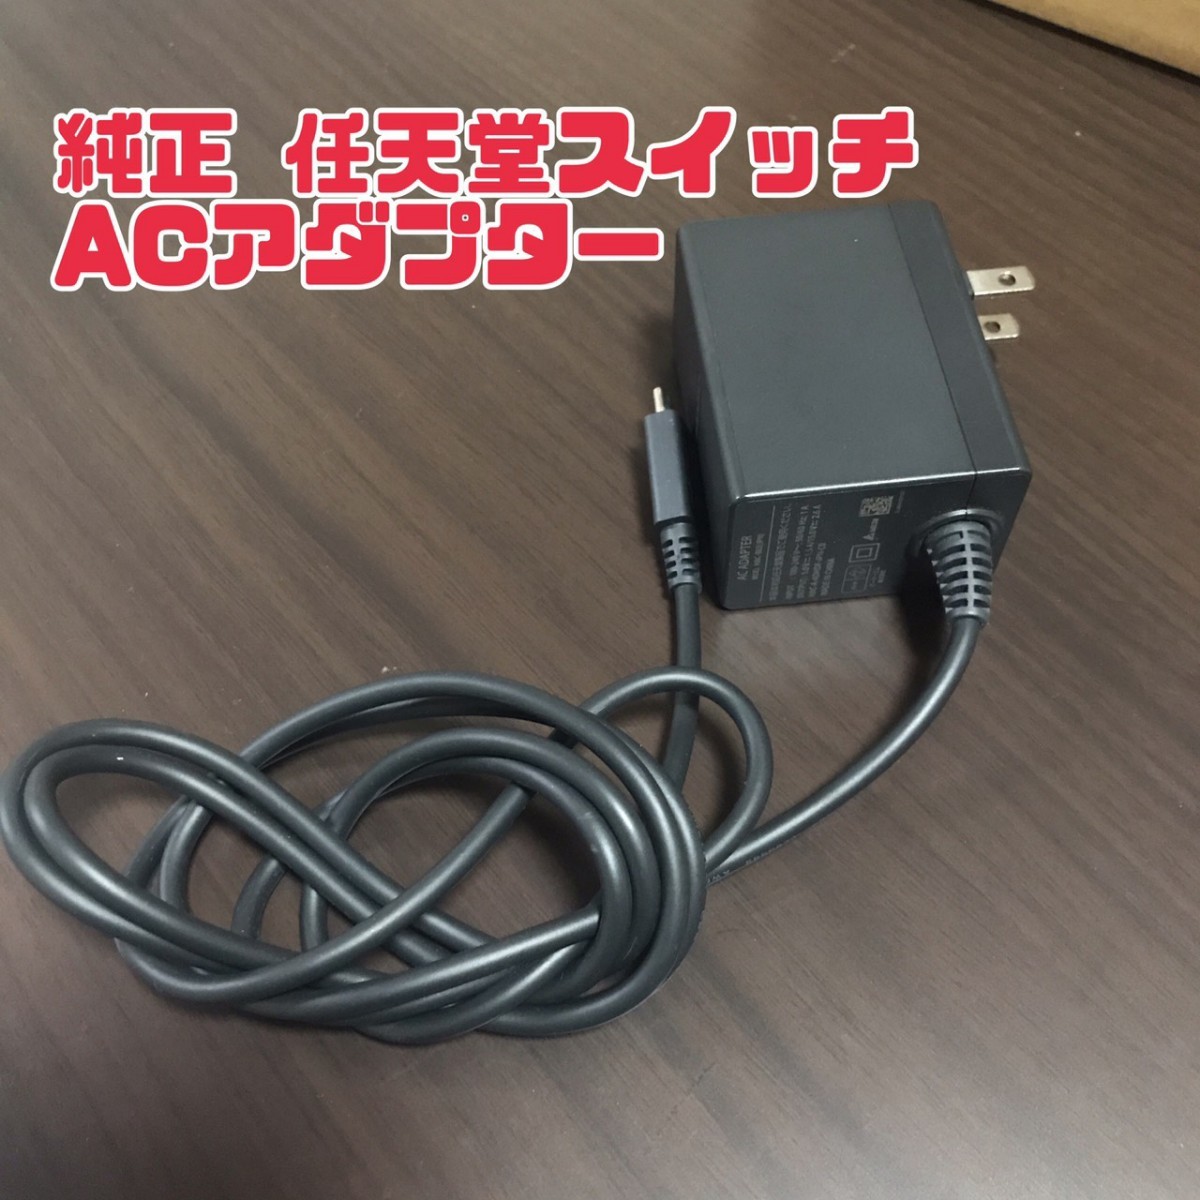 Nintendo Switch ニンテンドースイッチ 任天堂スイッチ 純正 ACアダプター